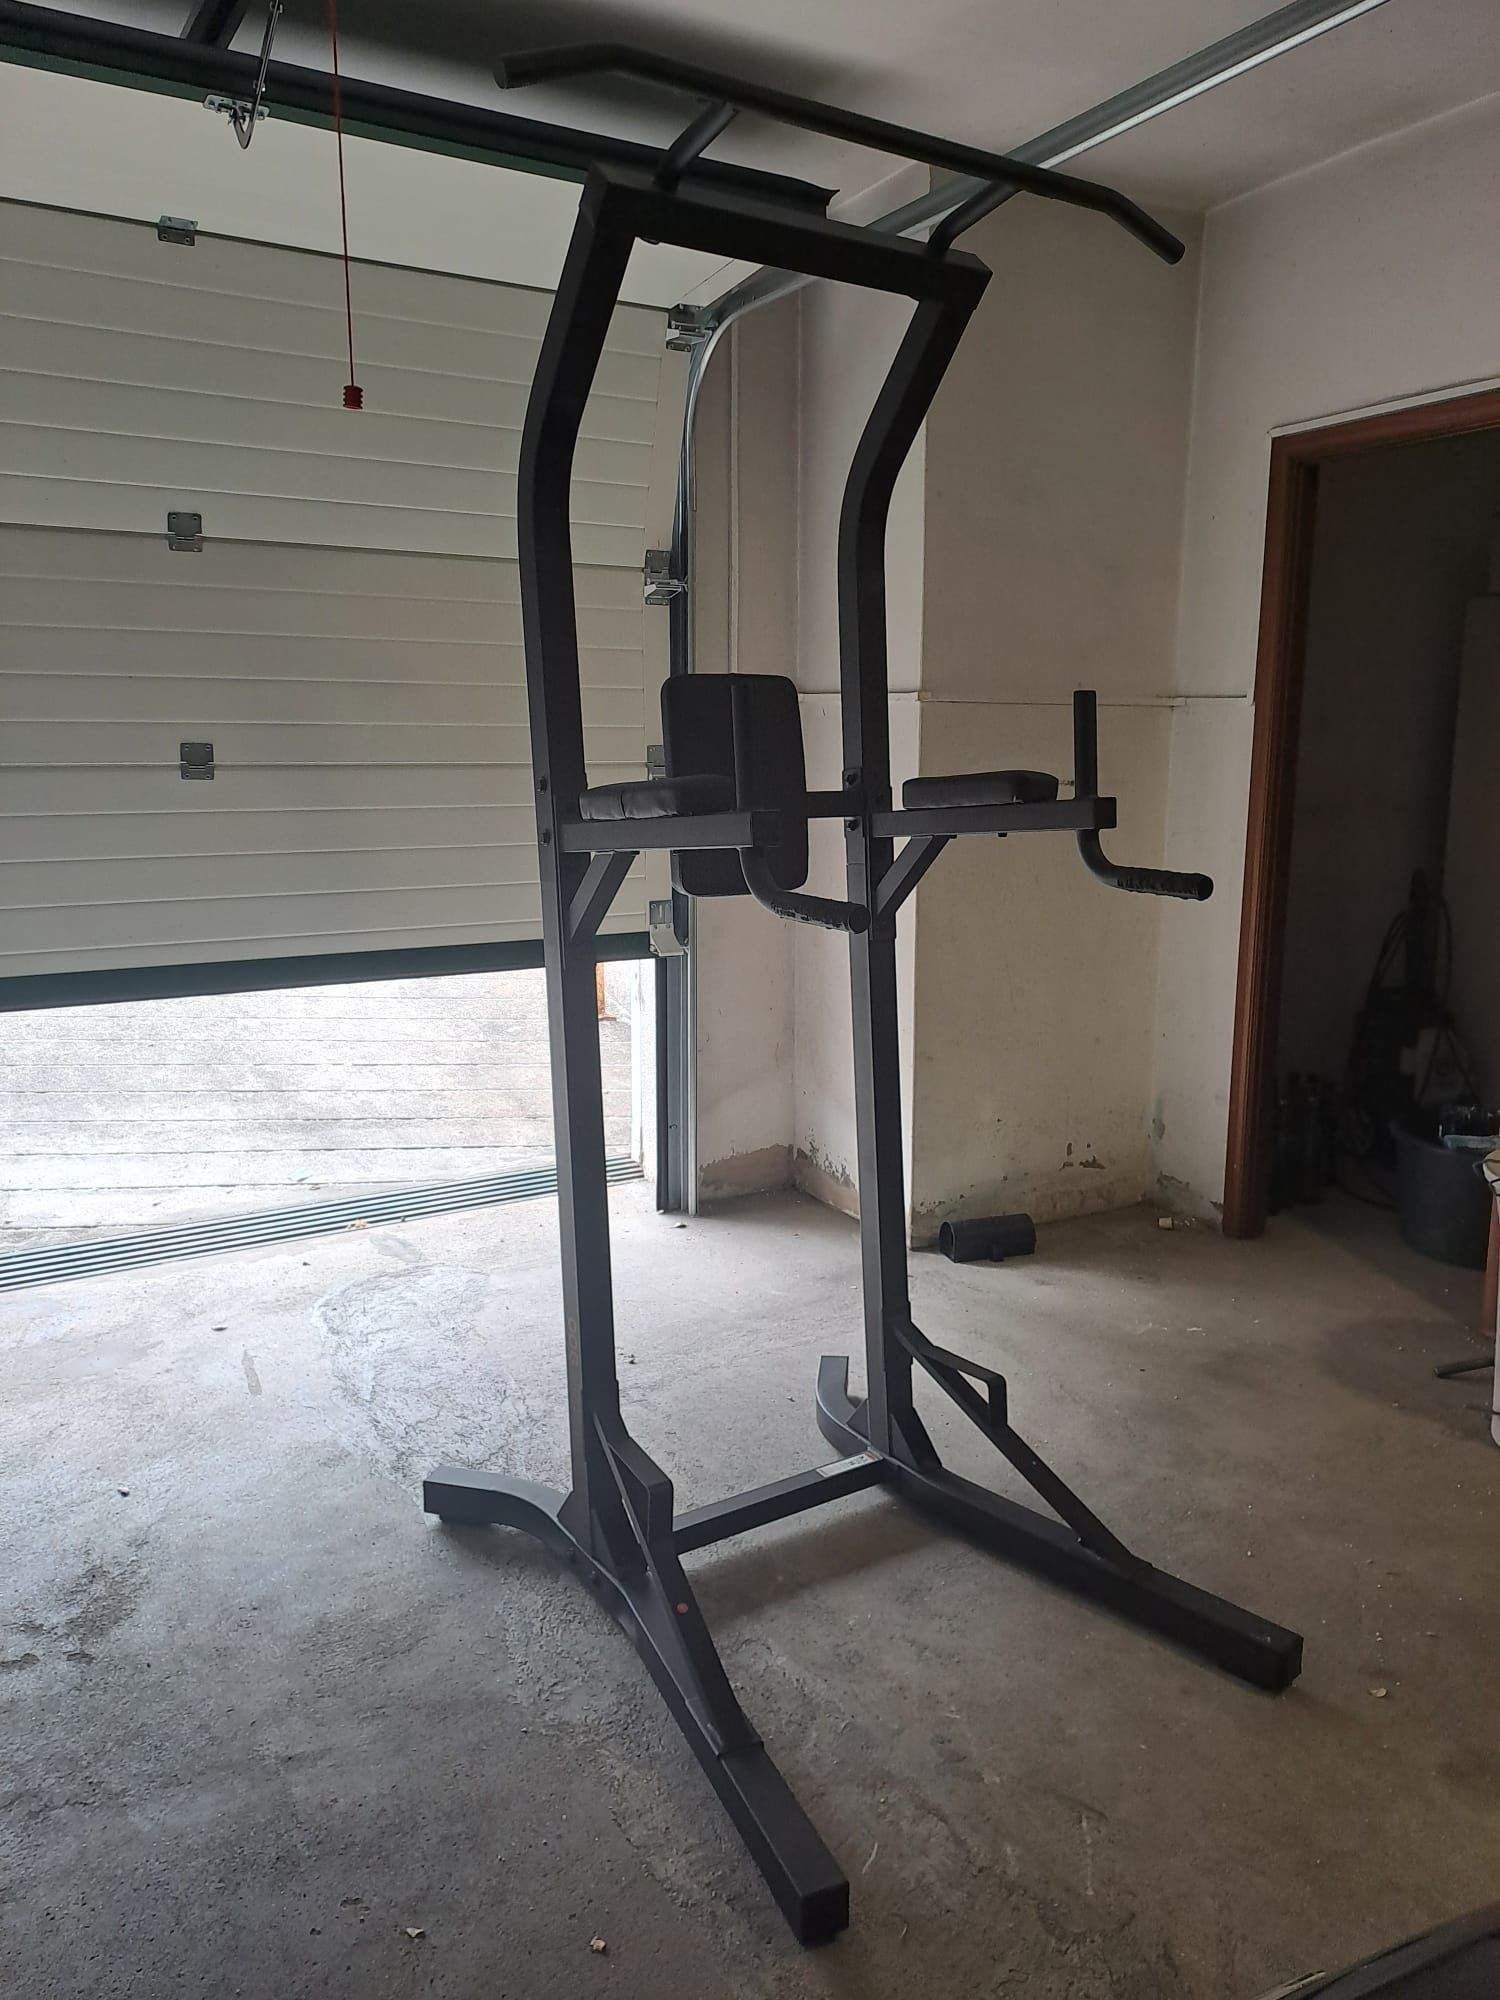 Cadeira Romana de Musculação Training Station 900